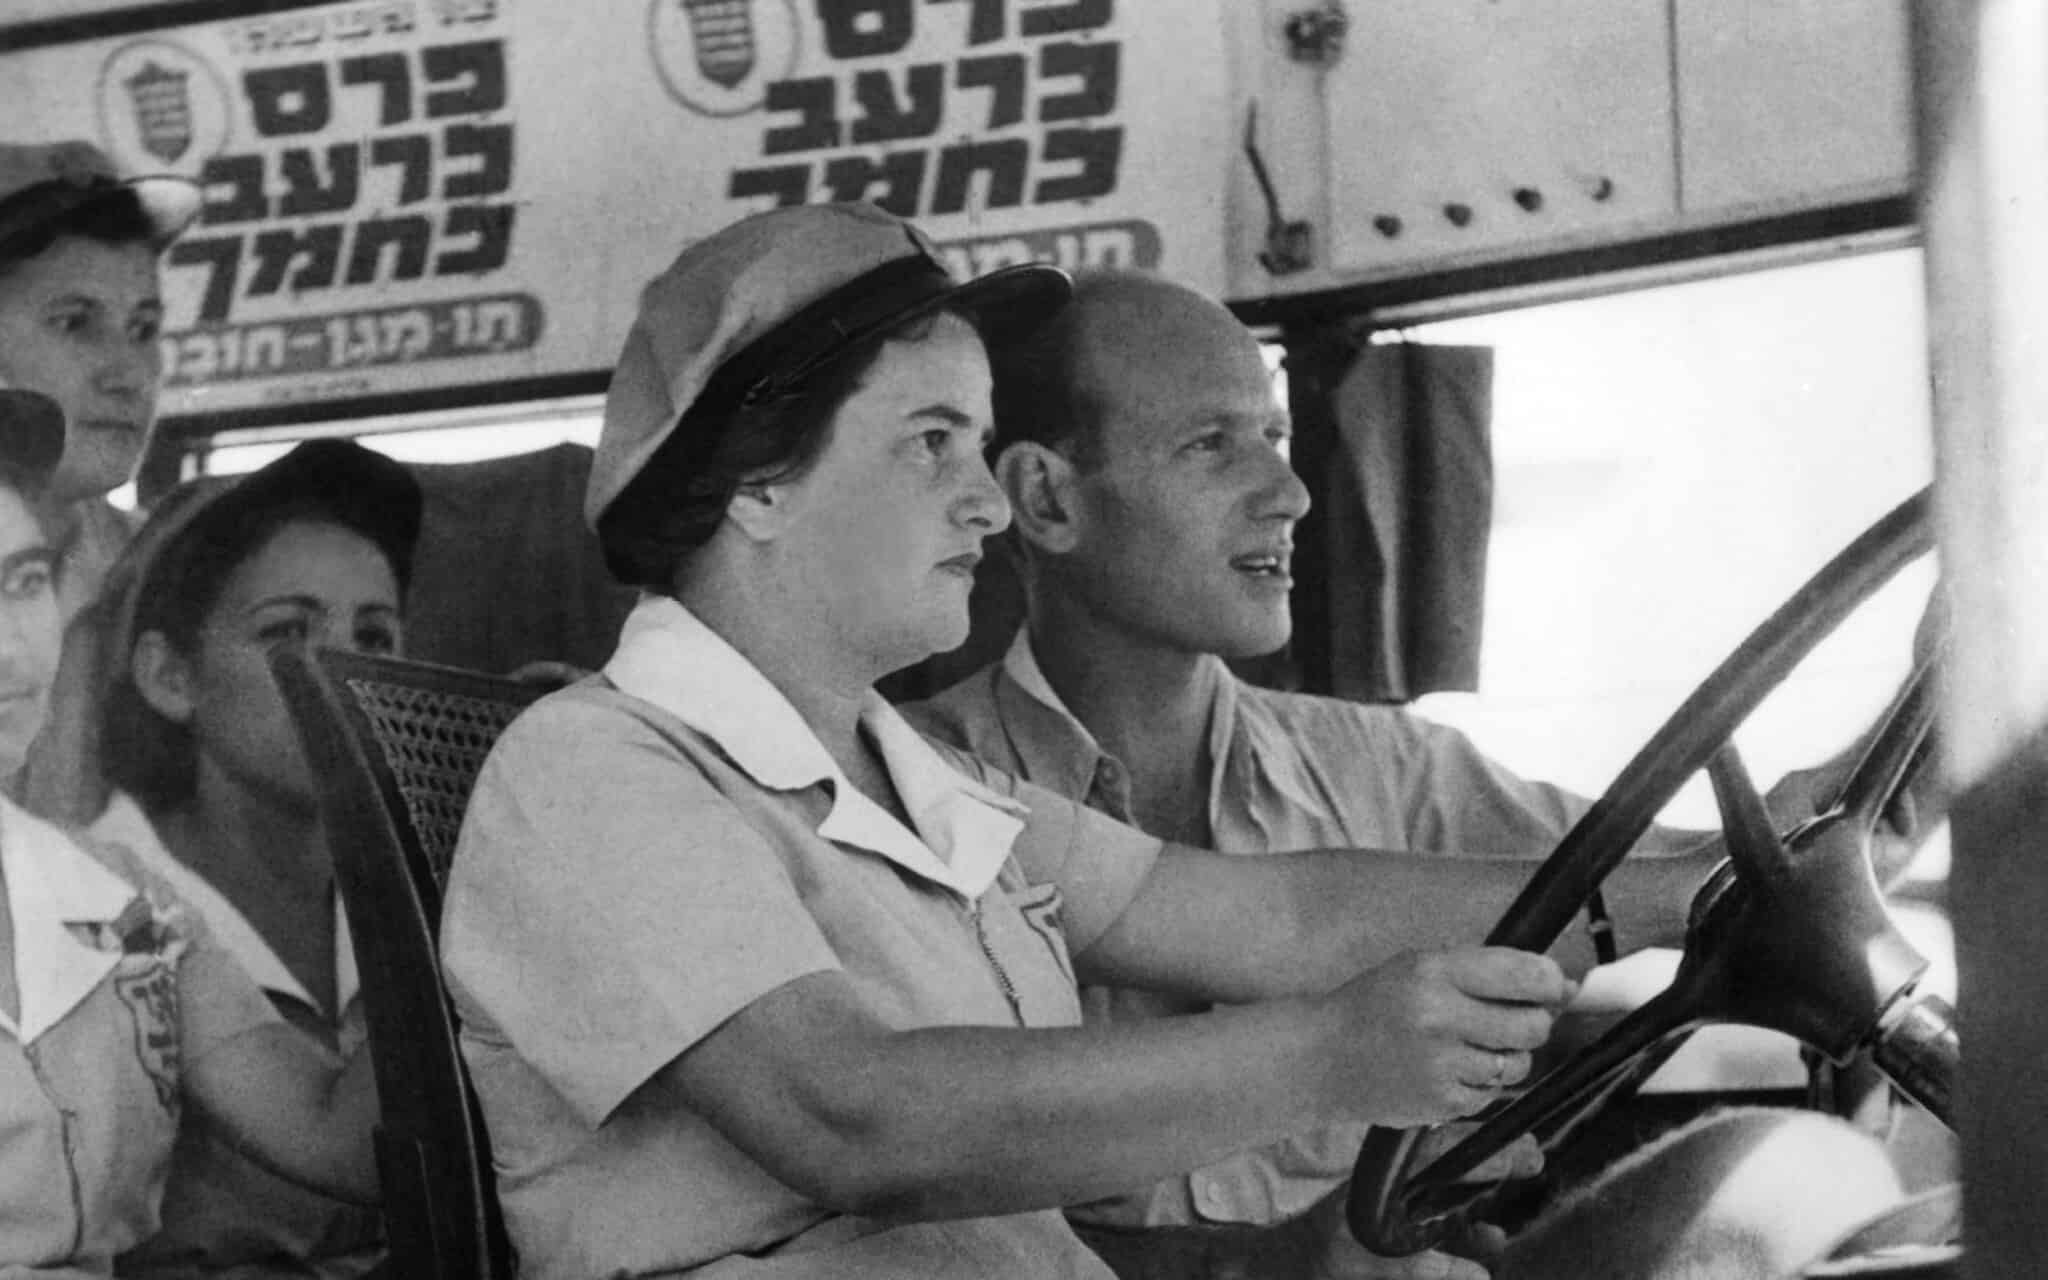 יוני 1941: נשים יהודיות לומדות כיצד לנהוג על אוטובוס בדרך לירושלים, לאחר שגברים יהודיים רבים הצטרפו לצבא הבריטי כדי להילחם בנאצים (צילום: AP)